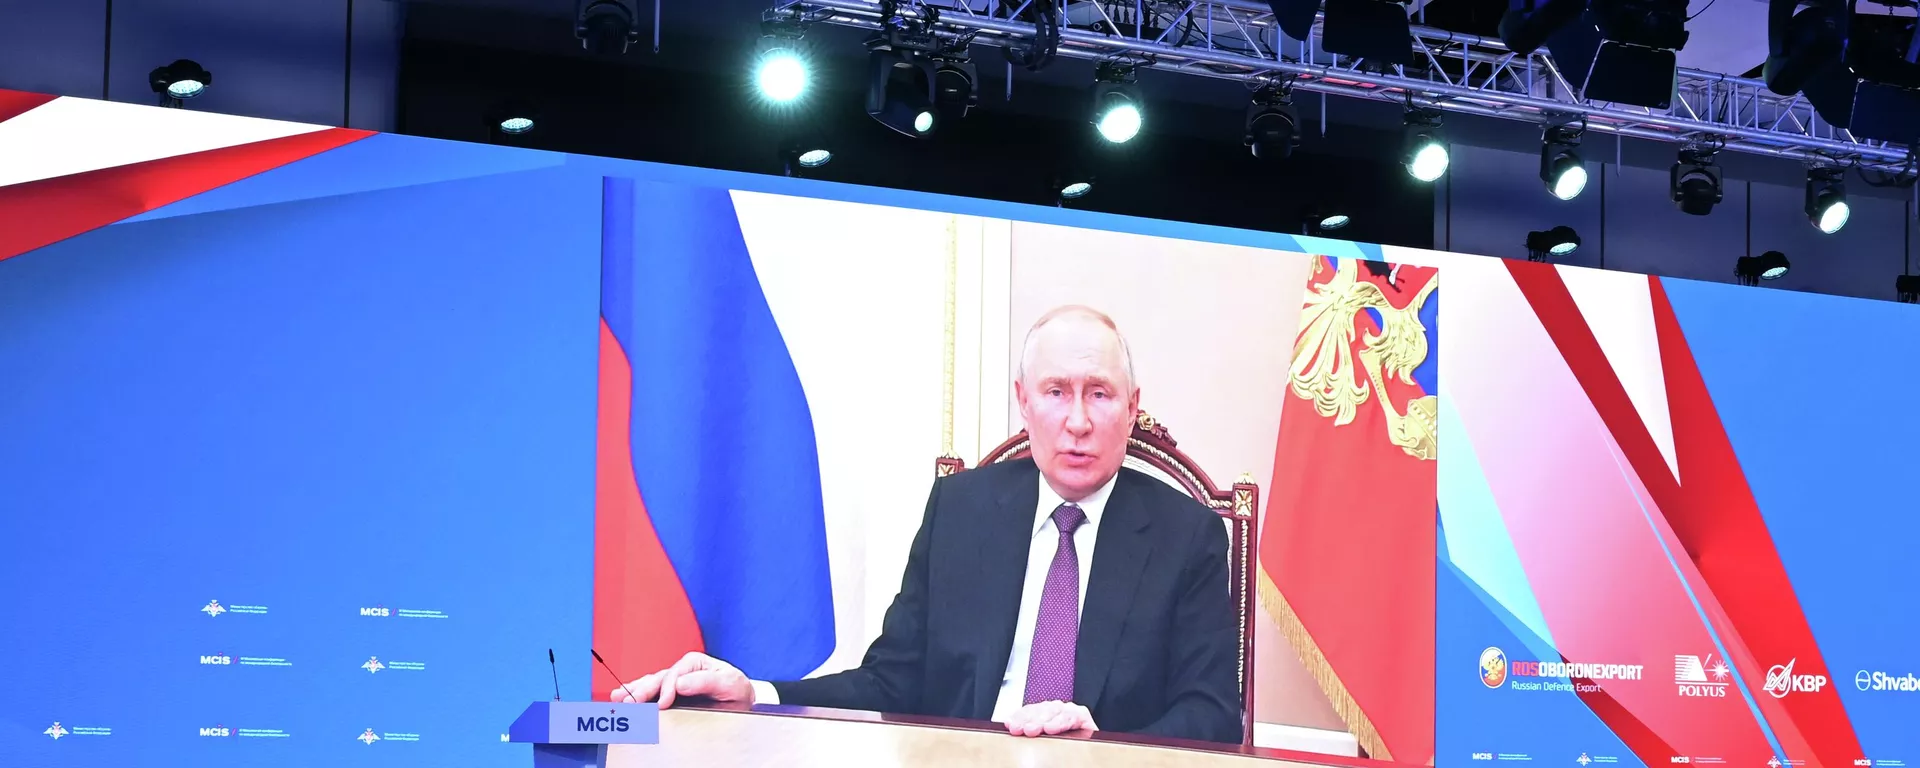 Wystąpienie wideo prezydenta Rosji Władimira Putina na XI moskiewskiej konferencji bezpieczeństwa międzynarodowego 15 sierpnia 2023 r. - Sputnik International, 1920, 15.08.2023